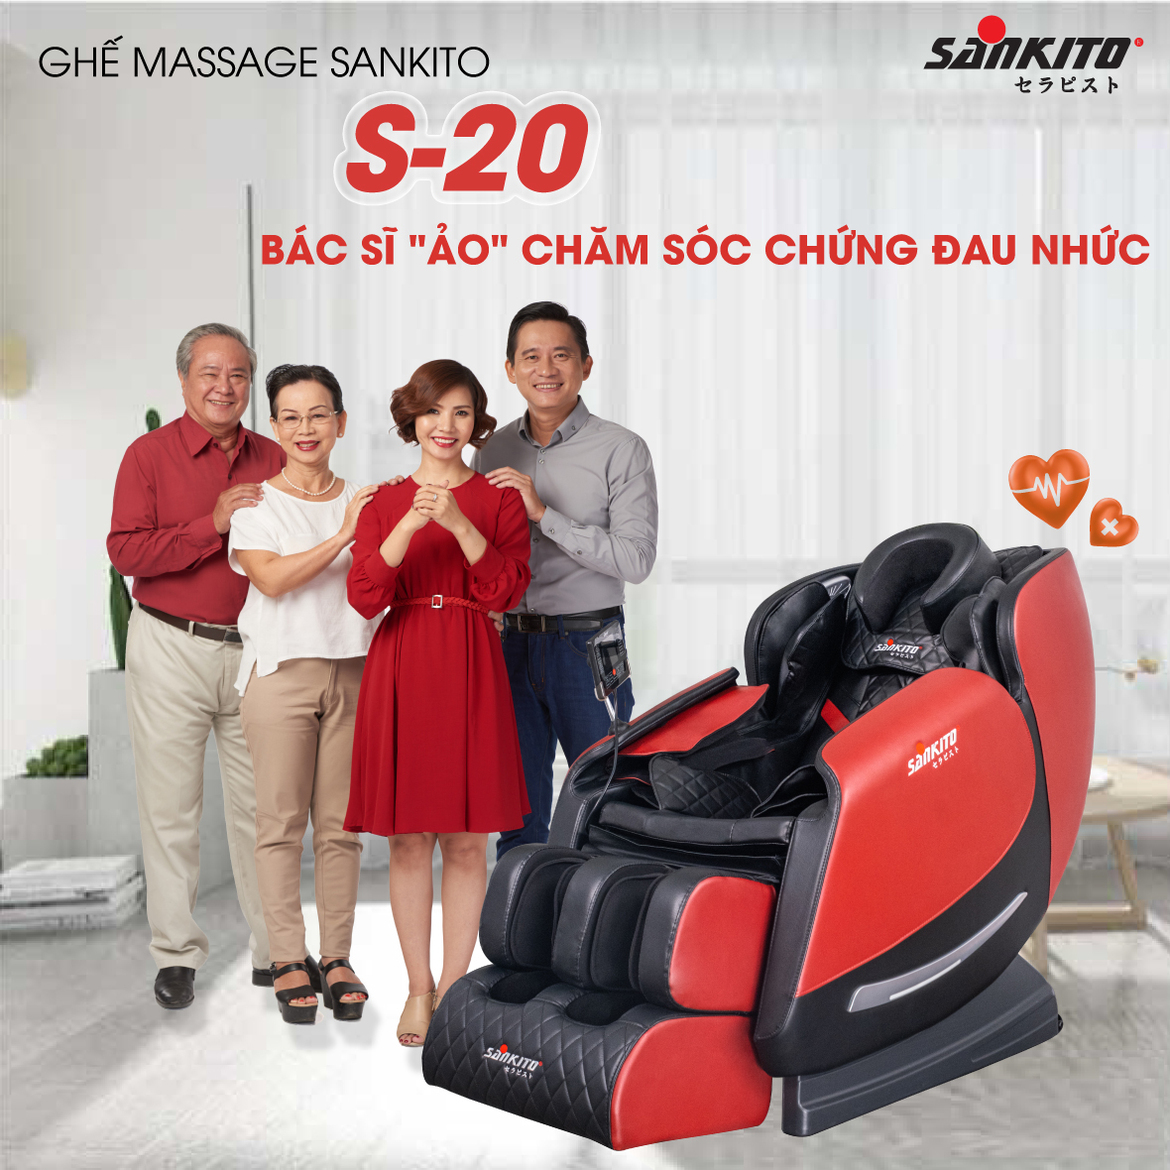 Sử dụng máy chạy bộ kết hợp với ghế massage giảm cân sau sinh đảm bảo an toàn cho các mẹ